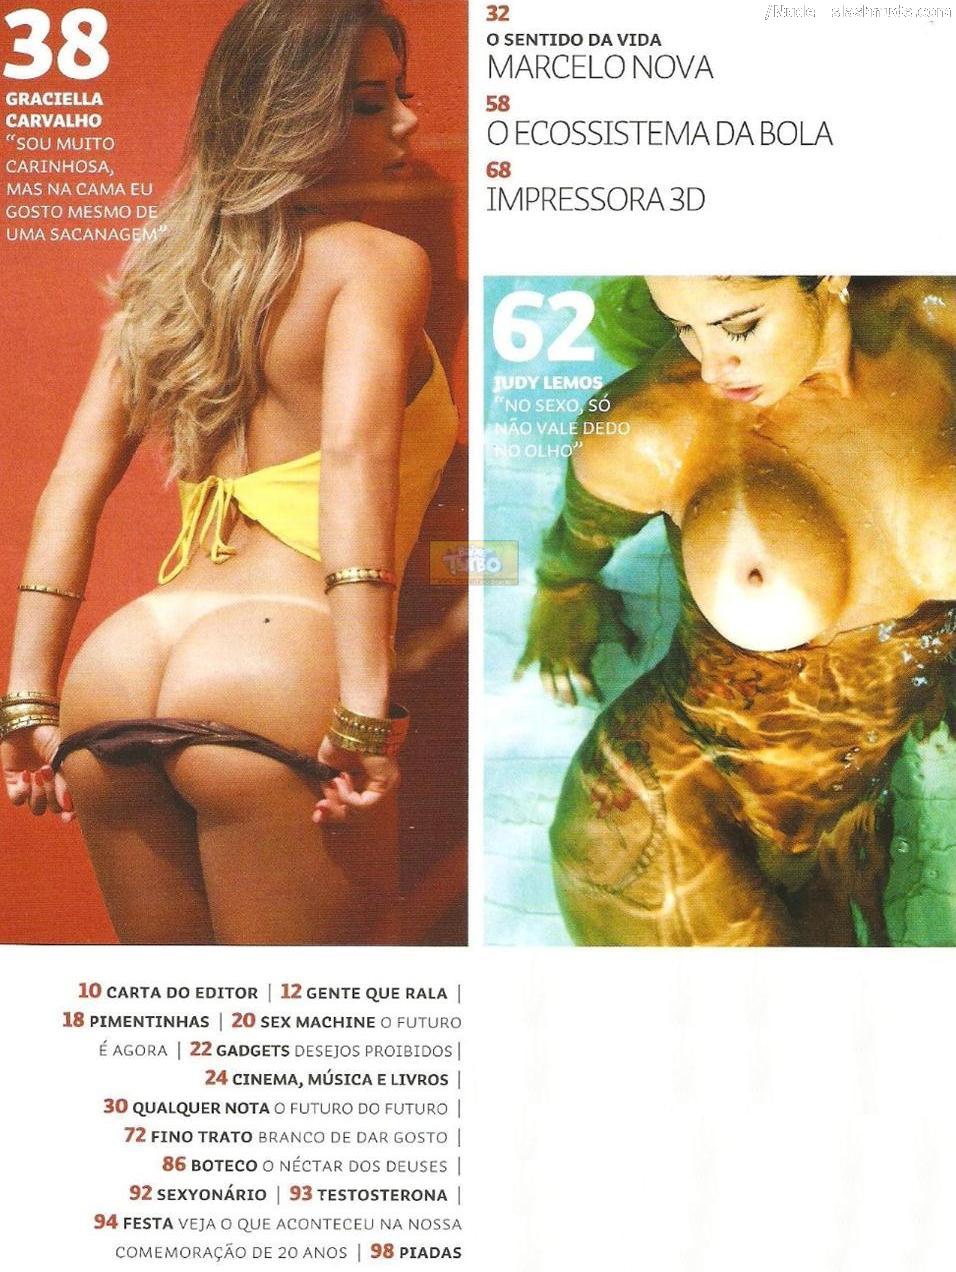 Graciella Carvalho nude photos